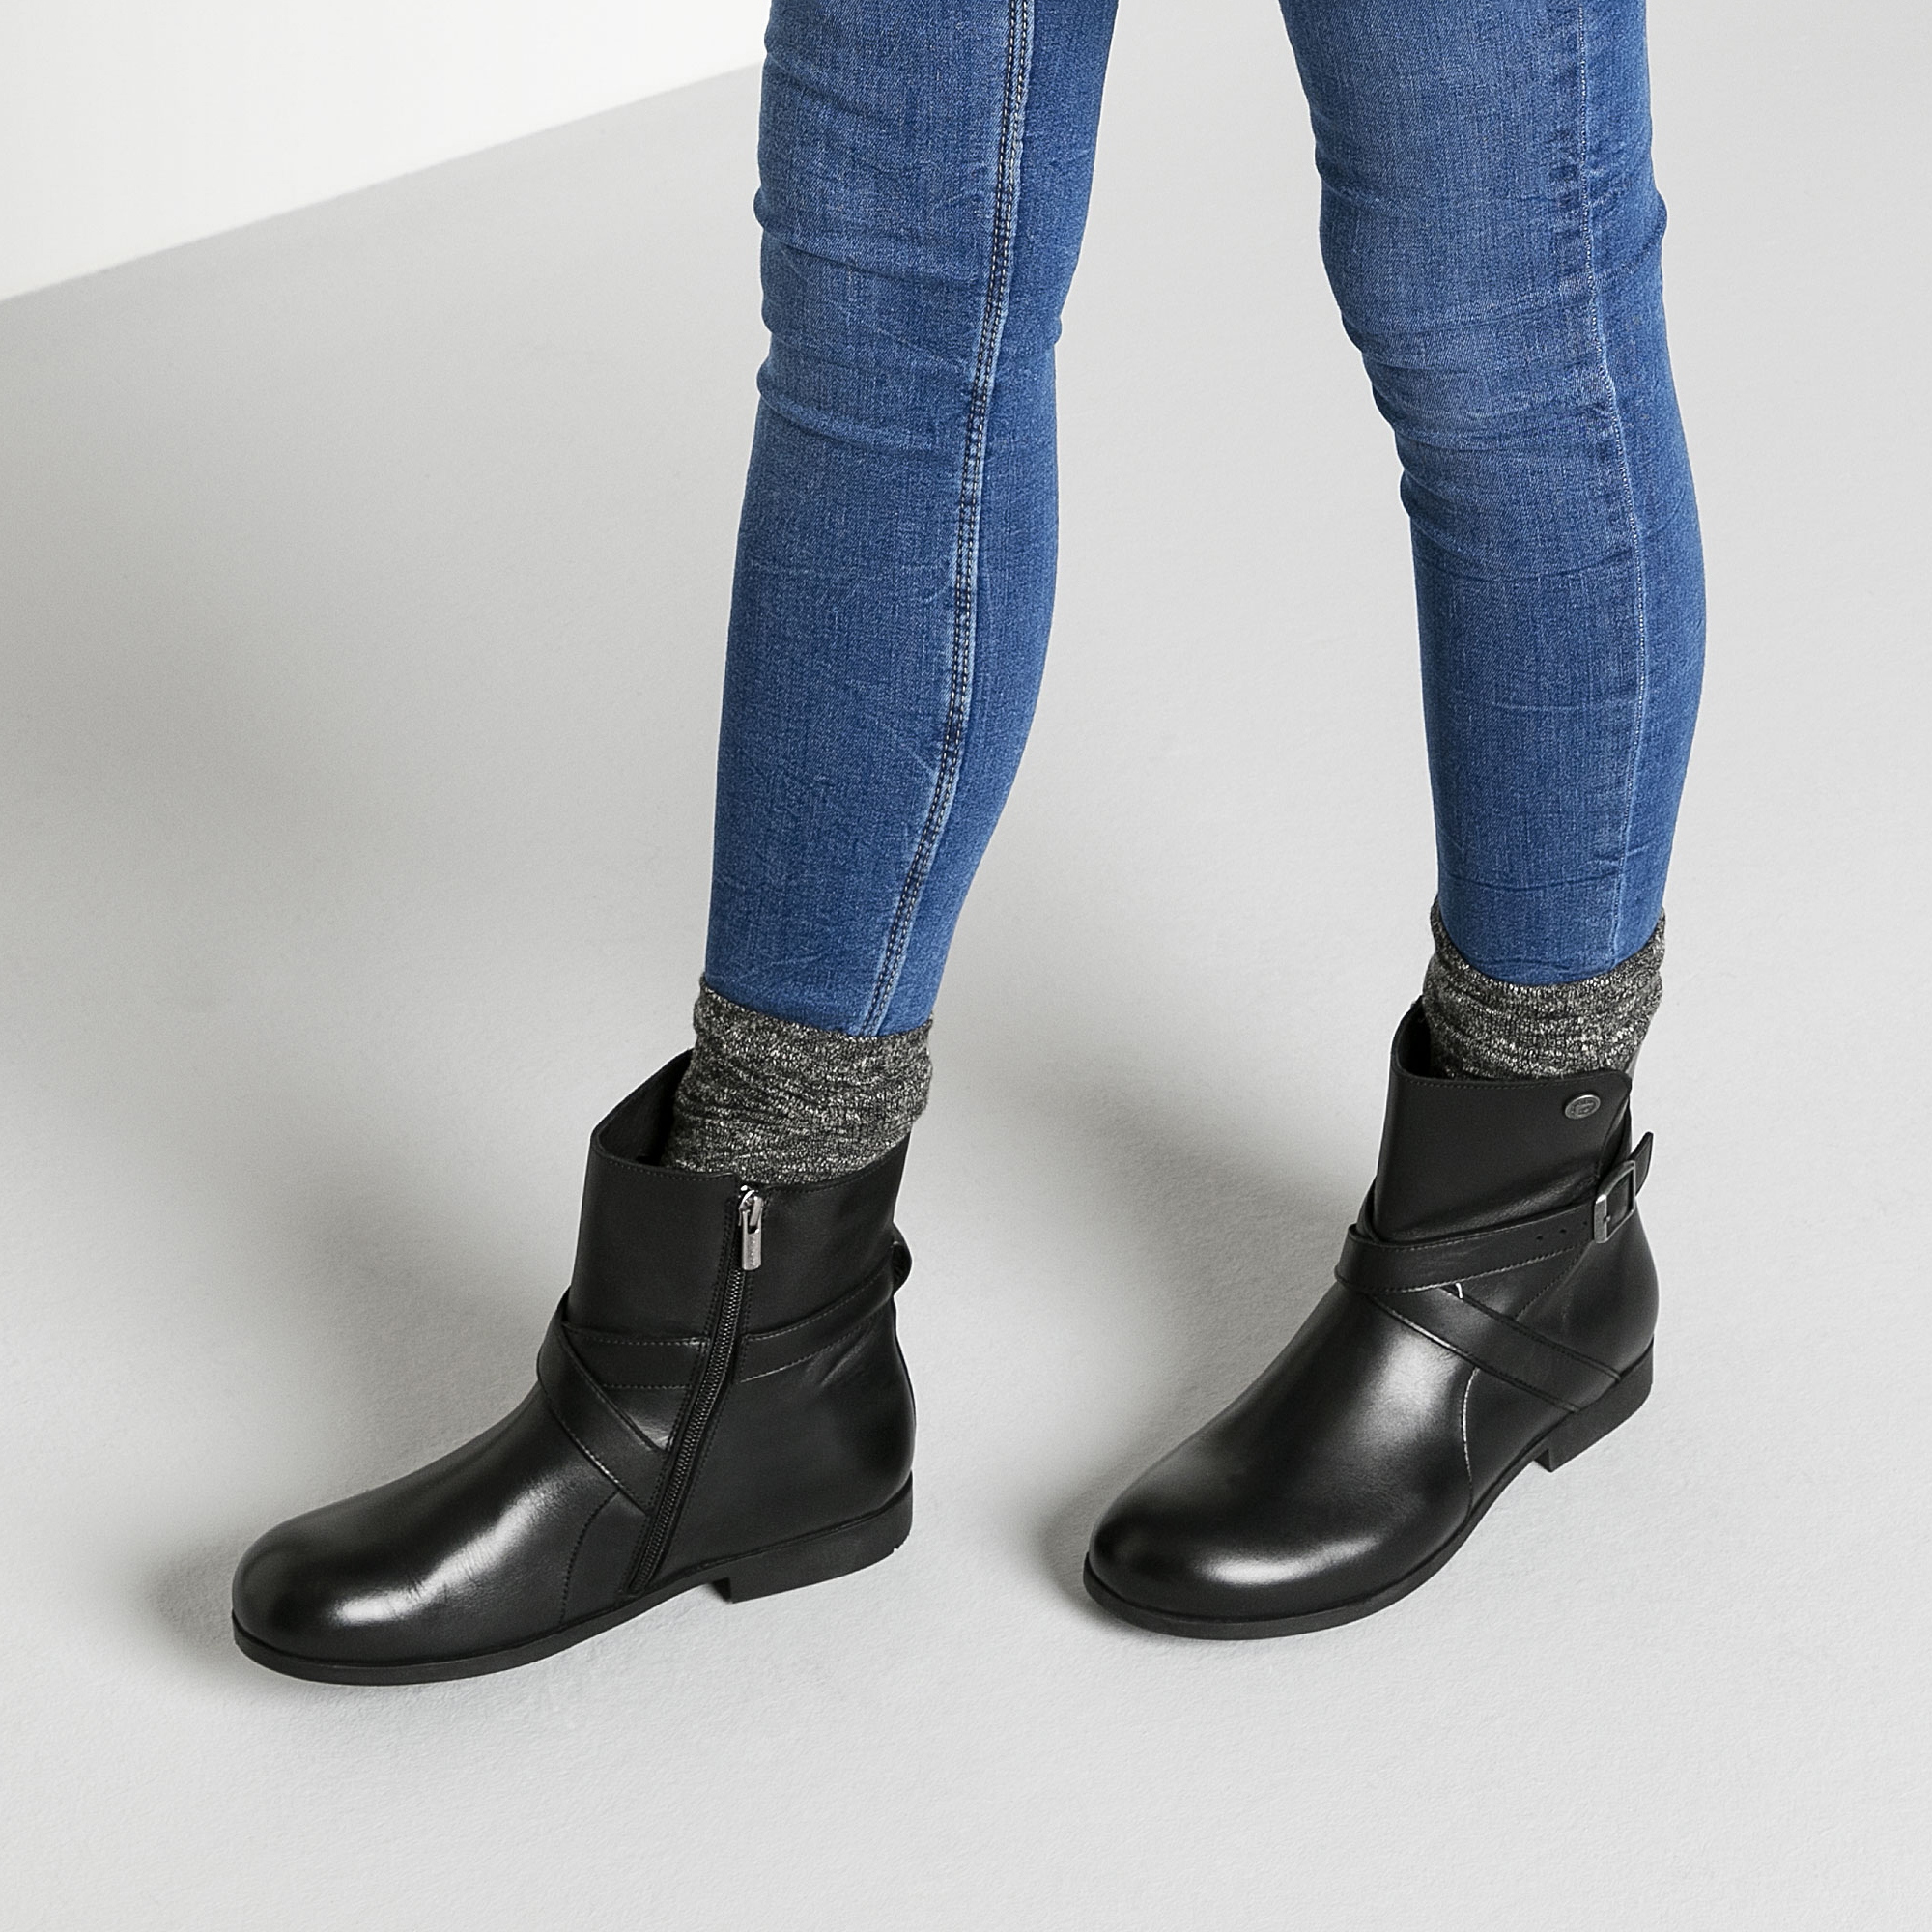 birkenstock black boots